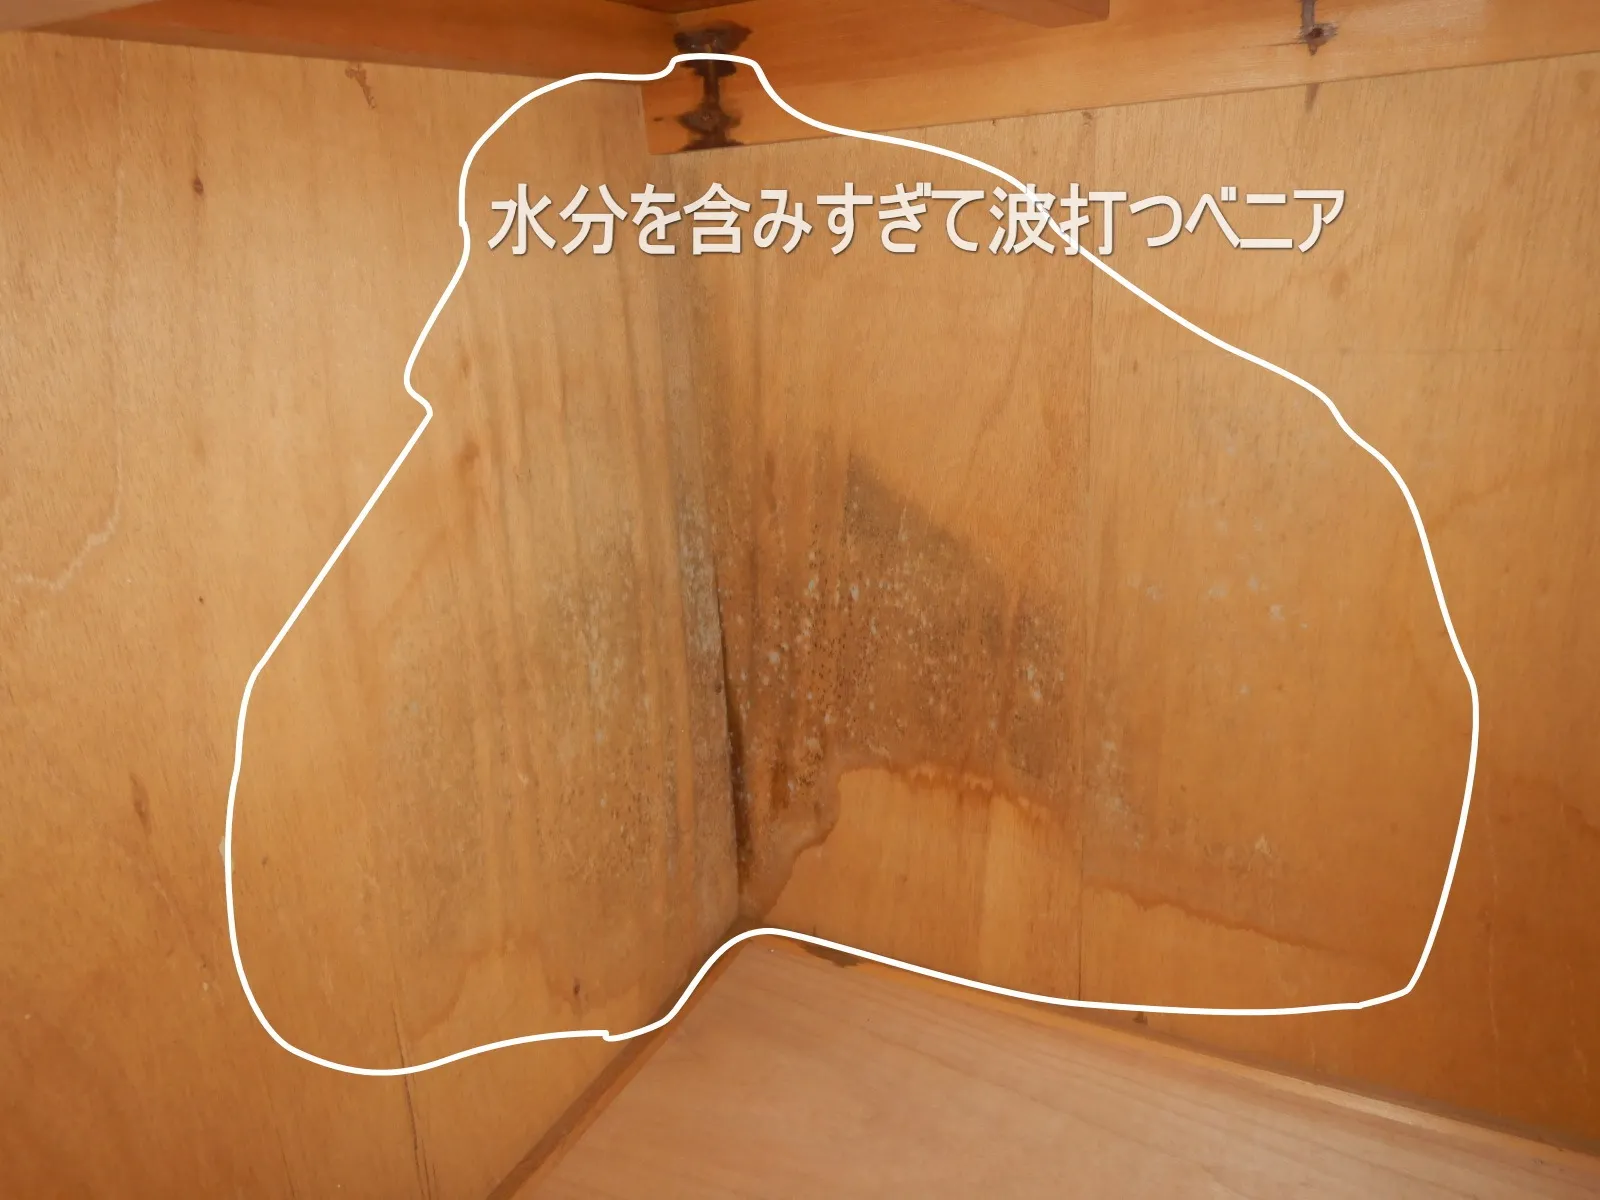 【埼玉県富士見市】マンション押入れベニアカビの原因は漏水か結露か